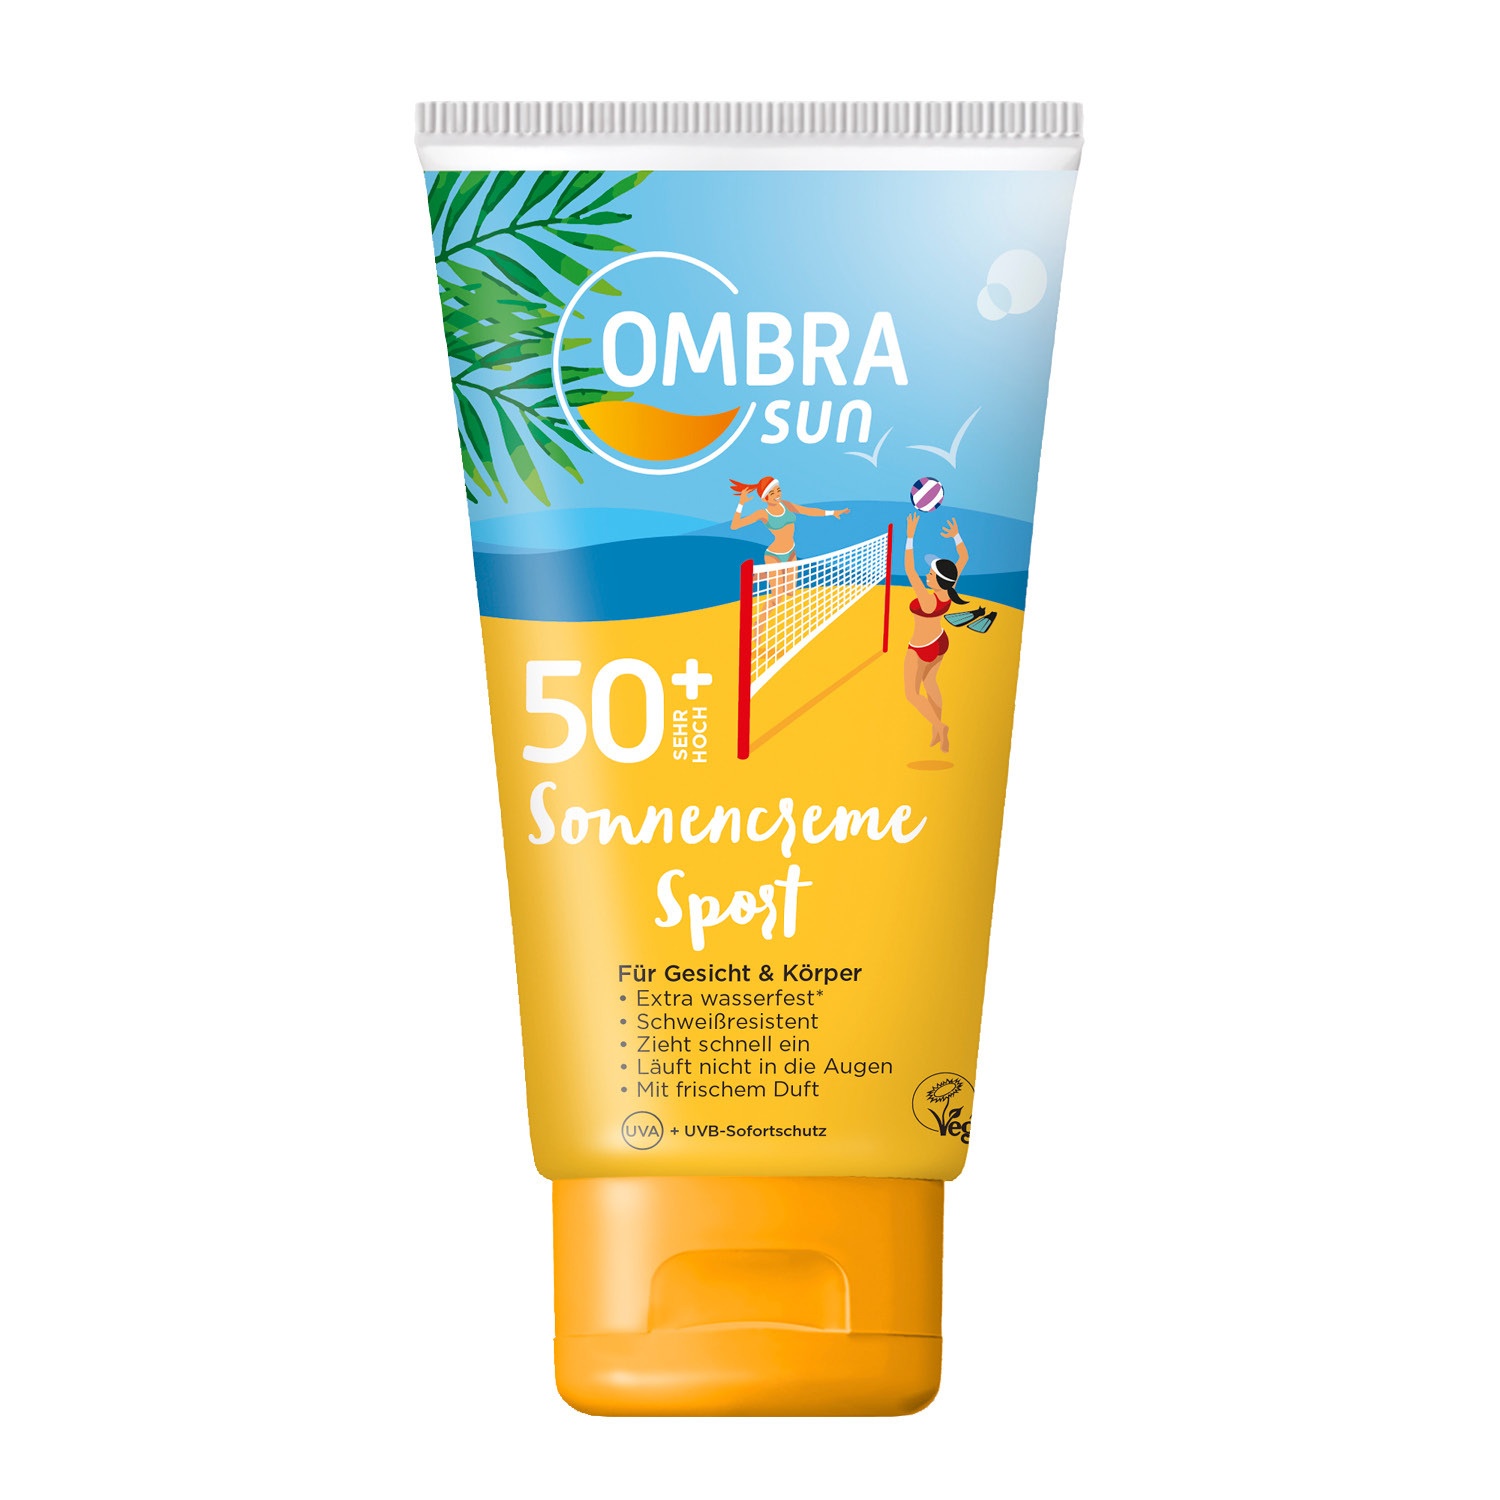 OMBRA sun Sonnenschutz Sport 200 ml